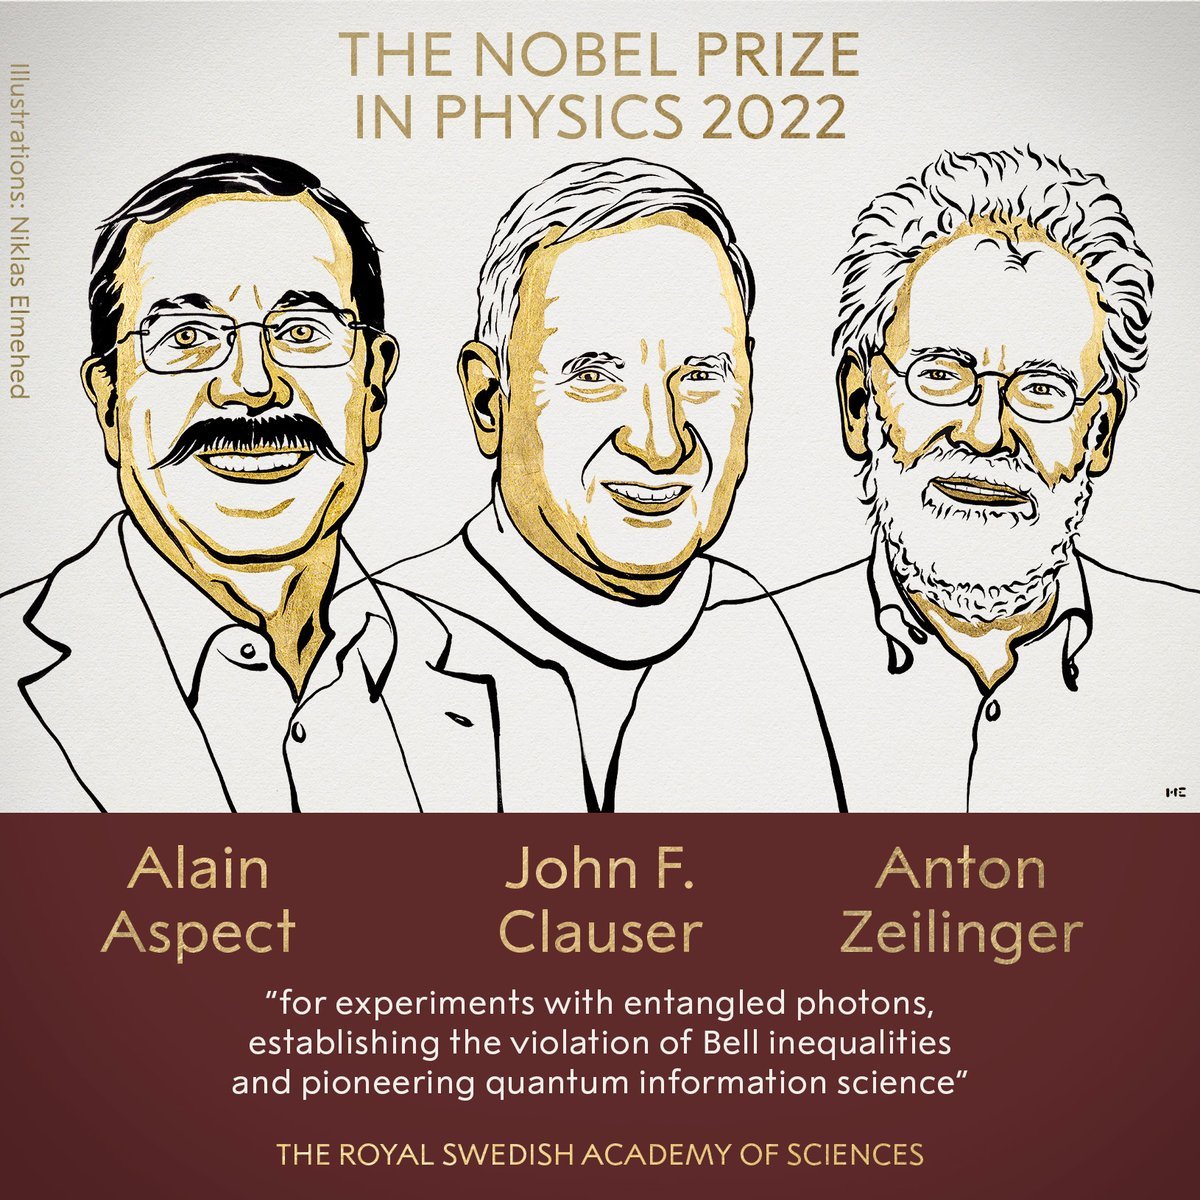 2022 Nobel Fizik Ödülü nü 3 bilim insanı paylaştı #2